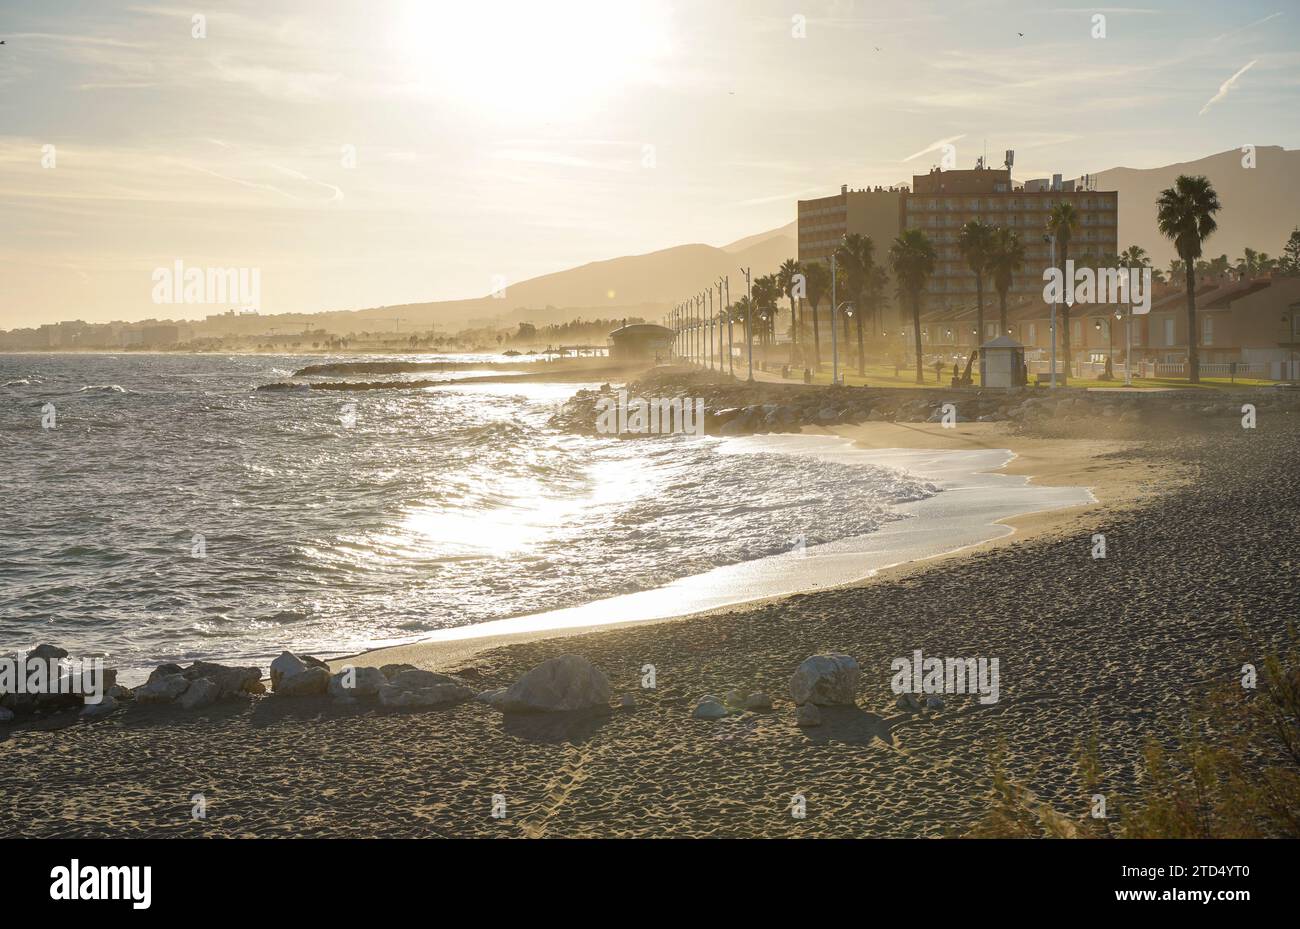 Playa de Guadalmar, Guadalmar, ville en mer près de Malaga, Costa del sol, Espagne. Banque D'Images